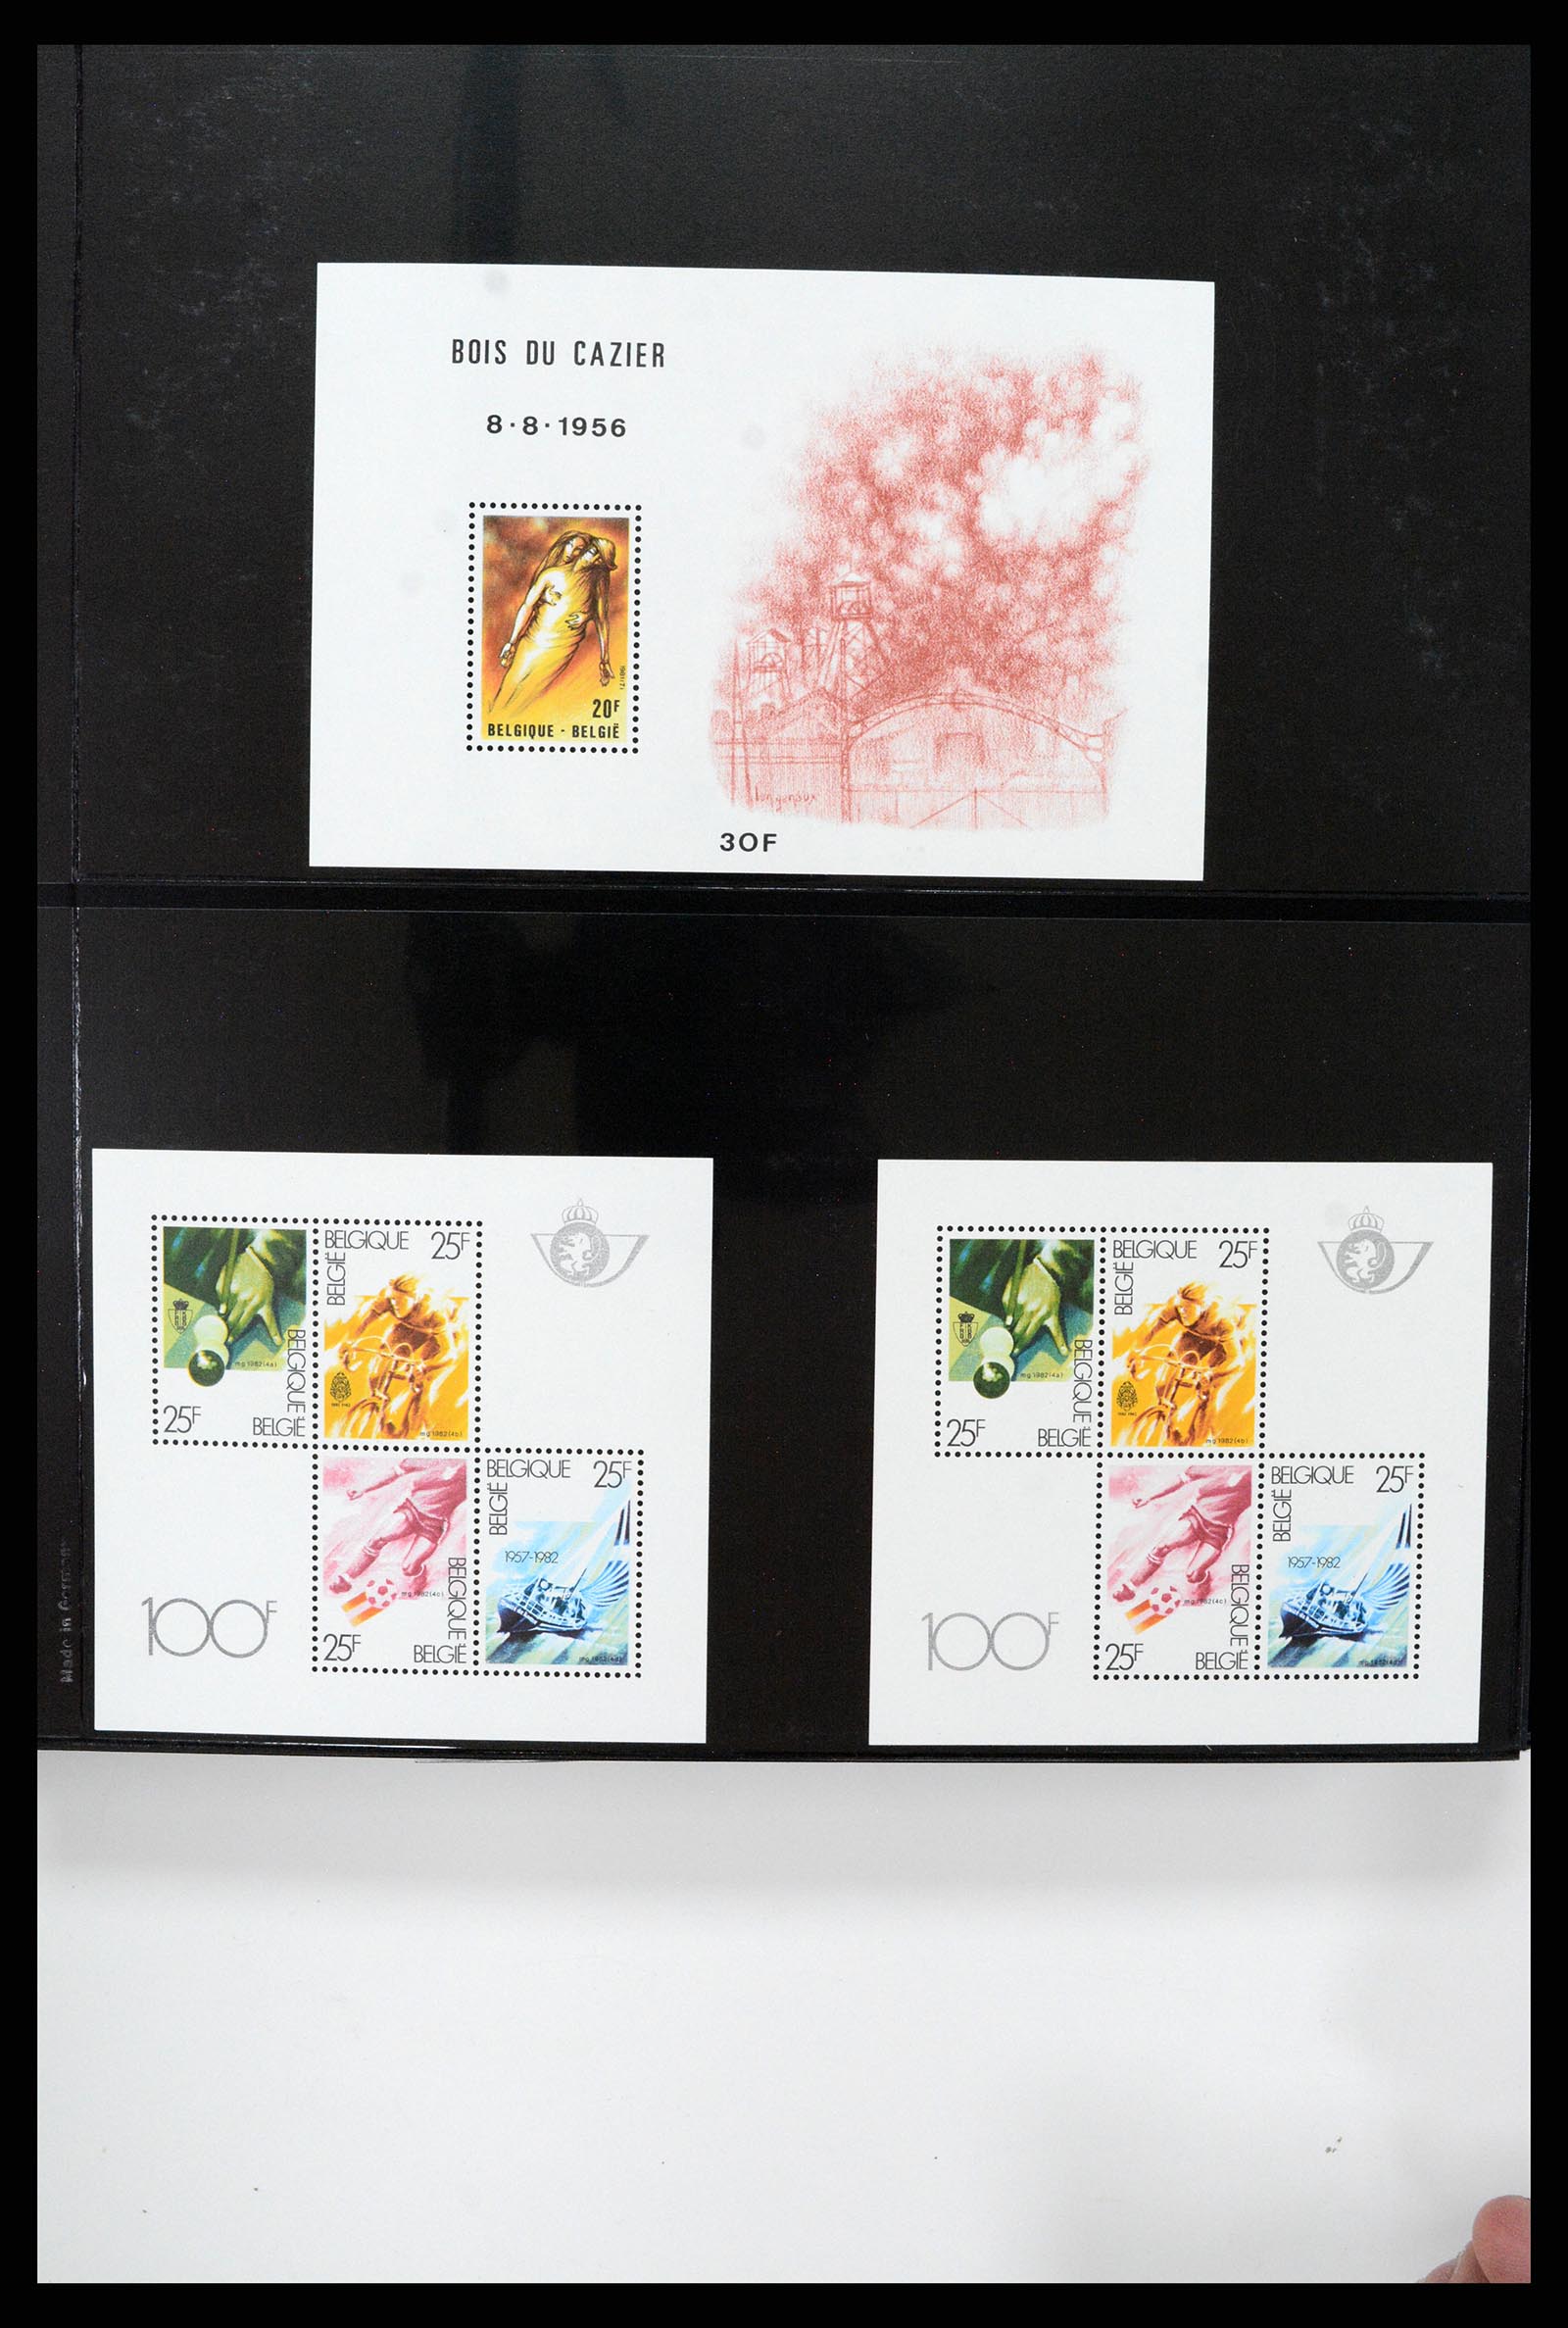 37345 010 - Stamp collection 37345 European countries souvenir sheets.